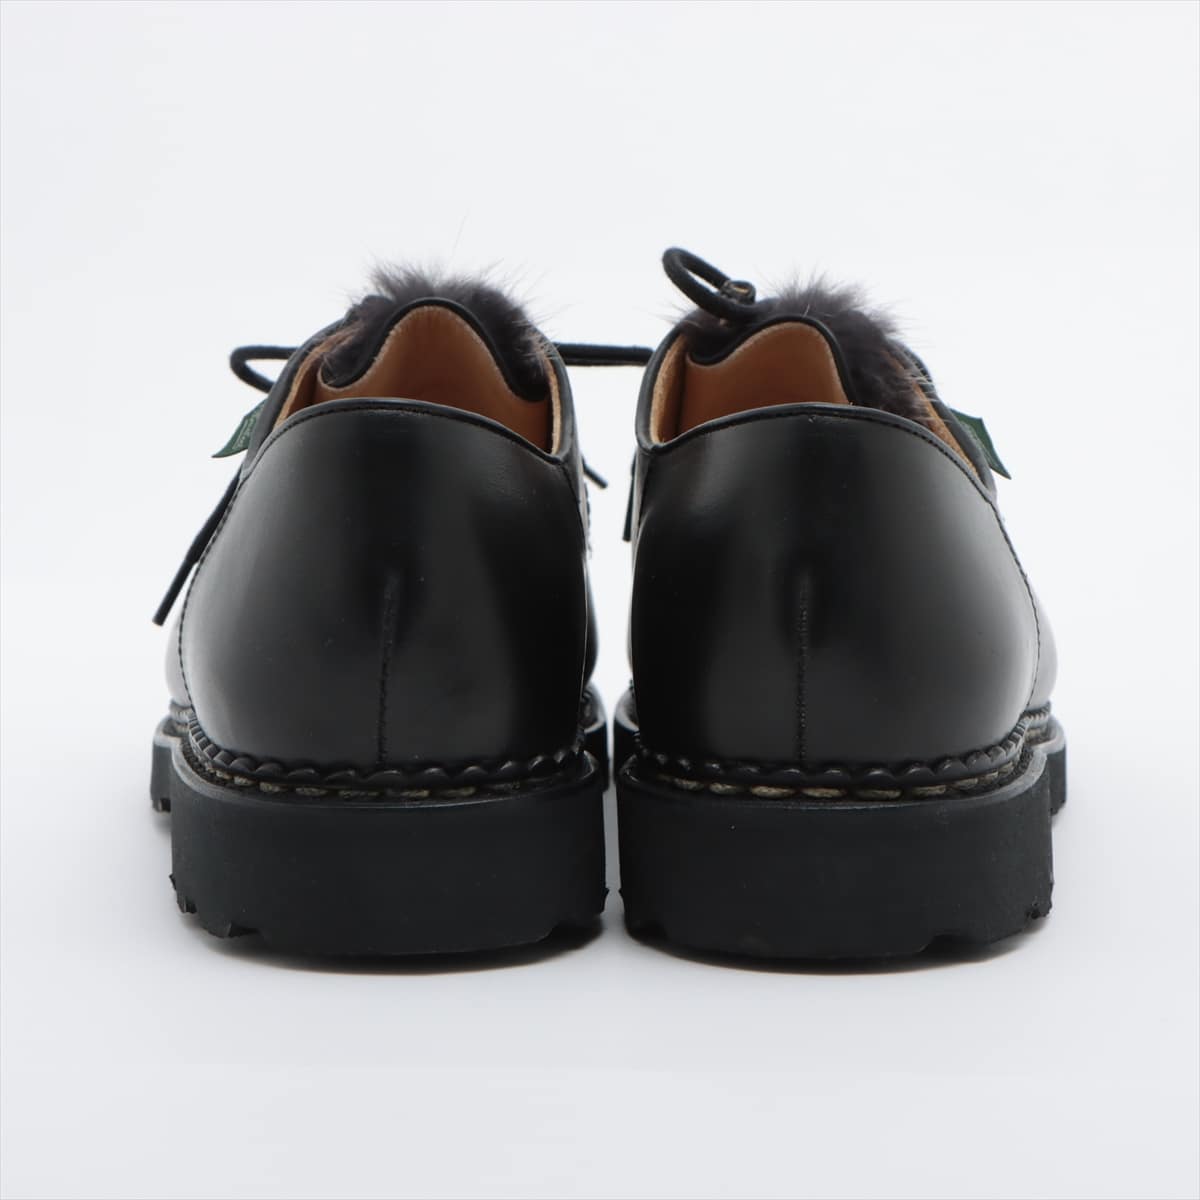 Paraboot Michaël Leather Leather shoes 41 Men's Black Tyrolean shoes Unborn calf